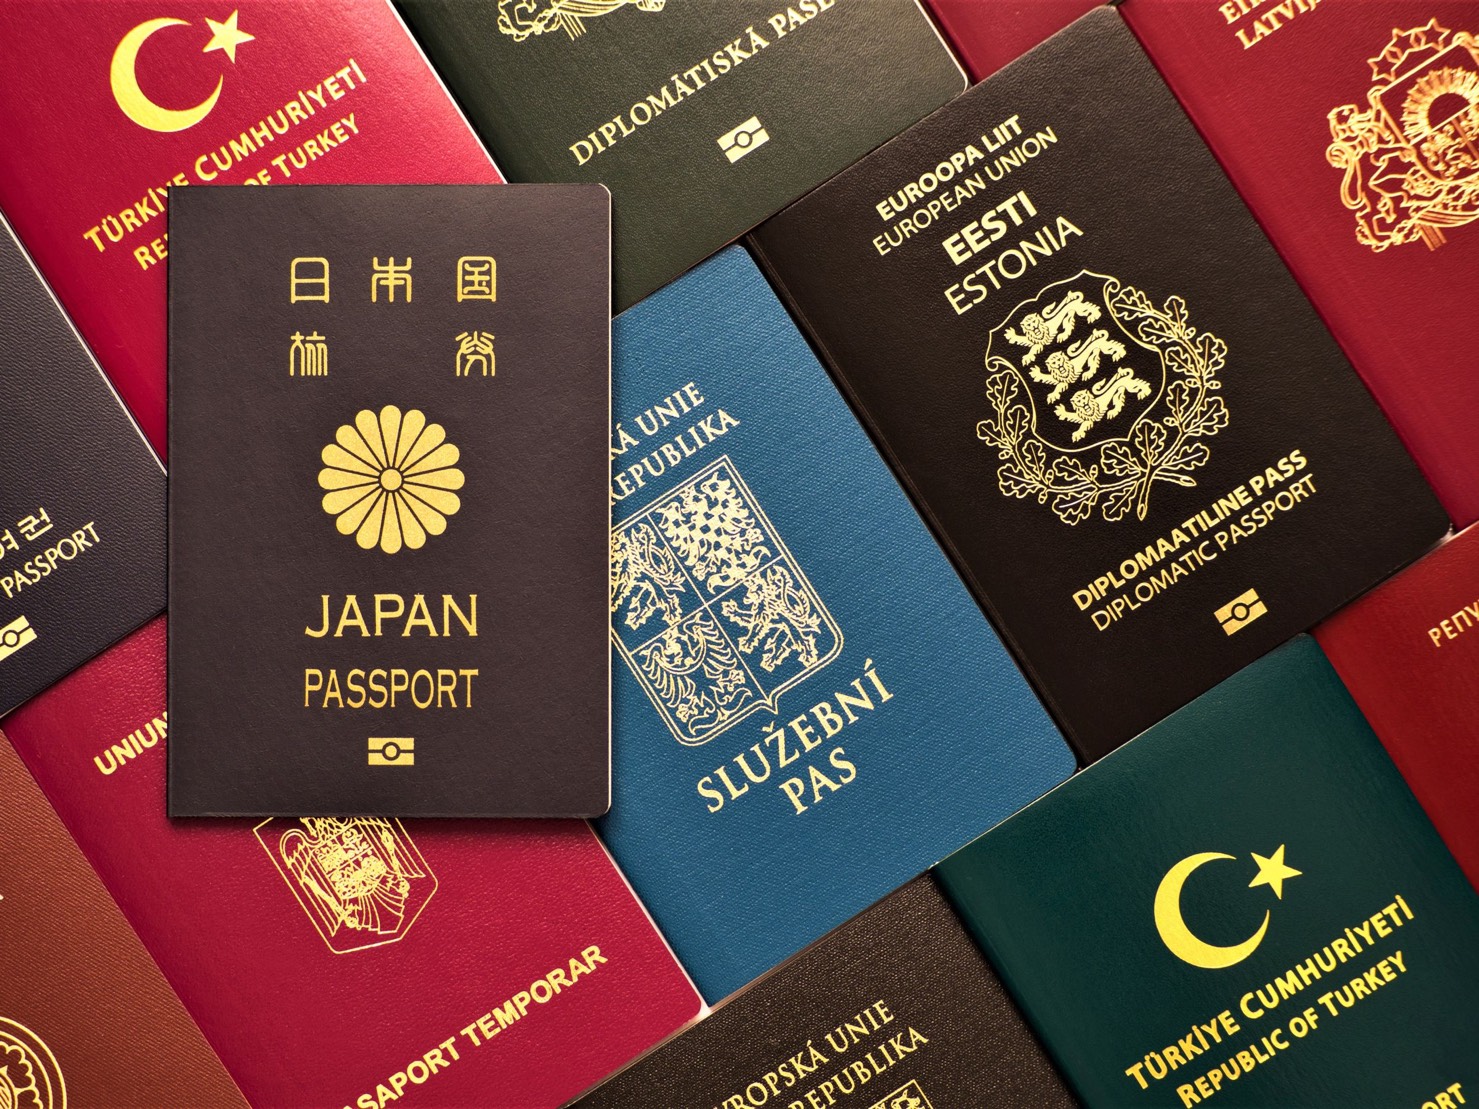 5/19起將暫緩非本國籍者入境一個月 外交部：暫停受理各類簽證申請